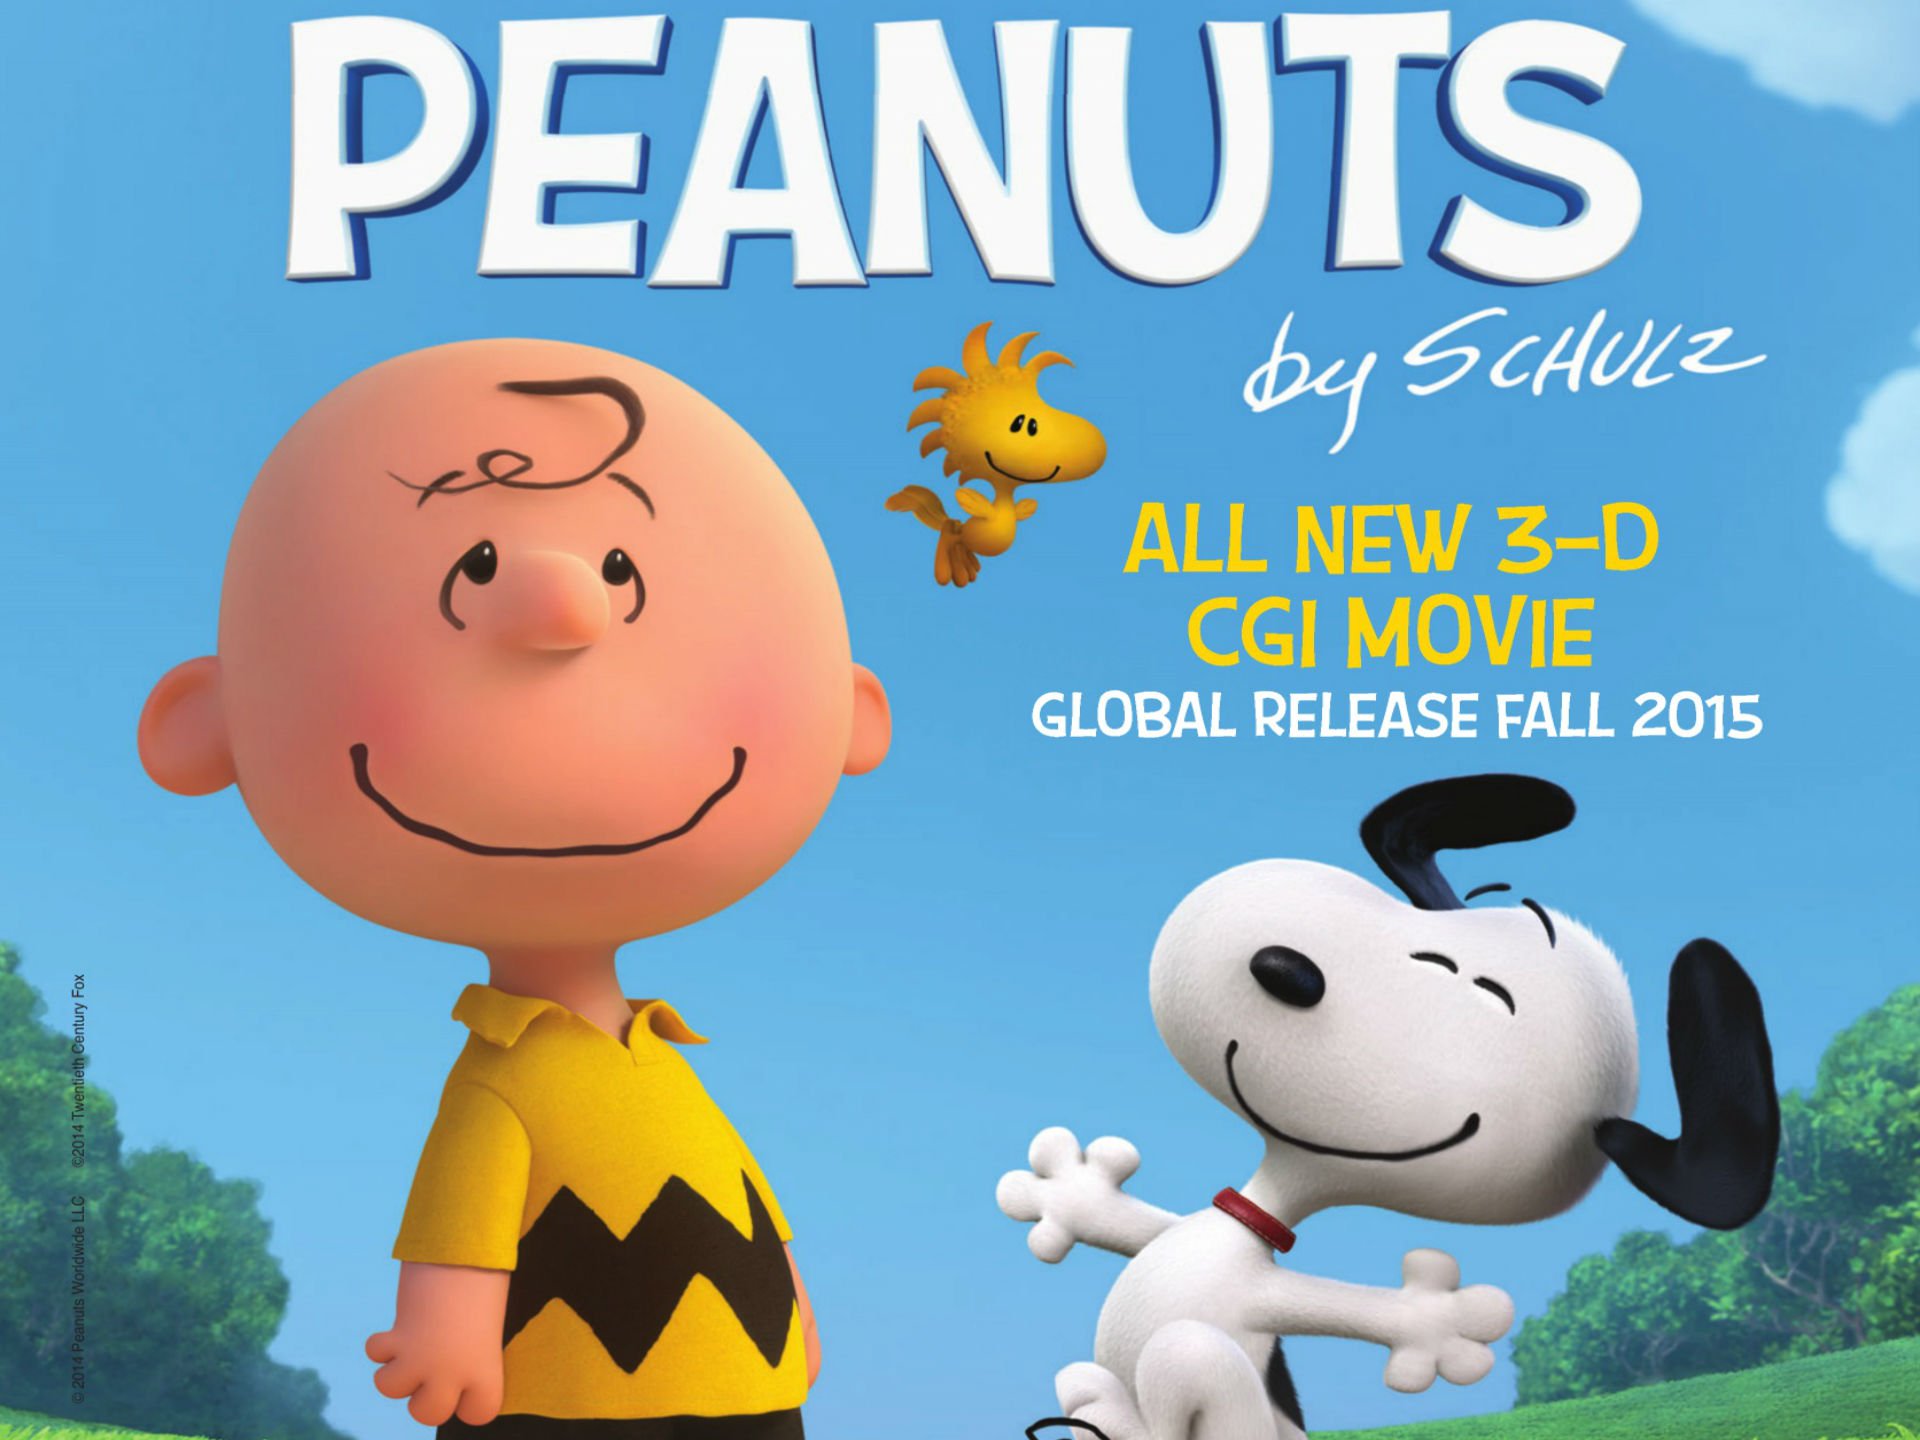 Peanuts Movie Animation Family Snoopy Edy Cgi Wallpaper